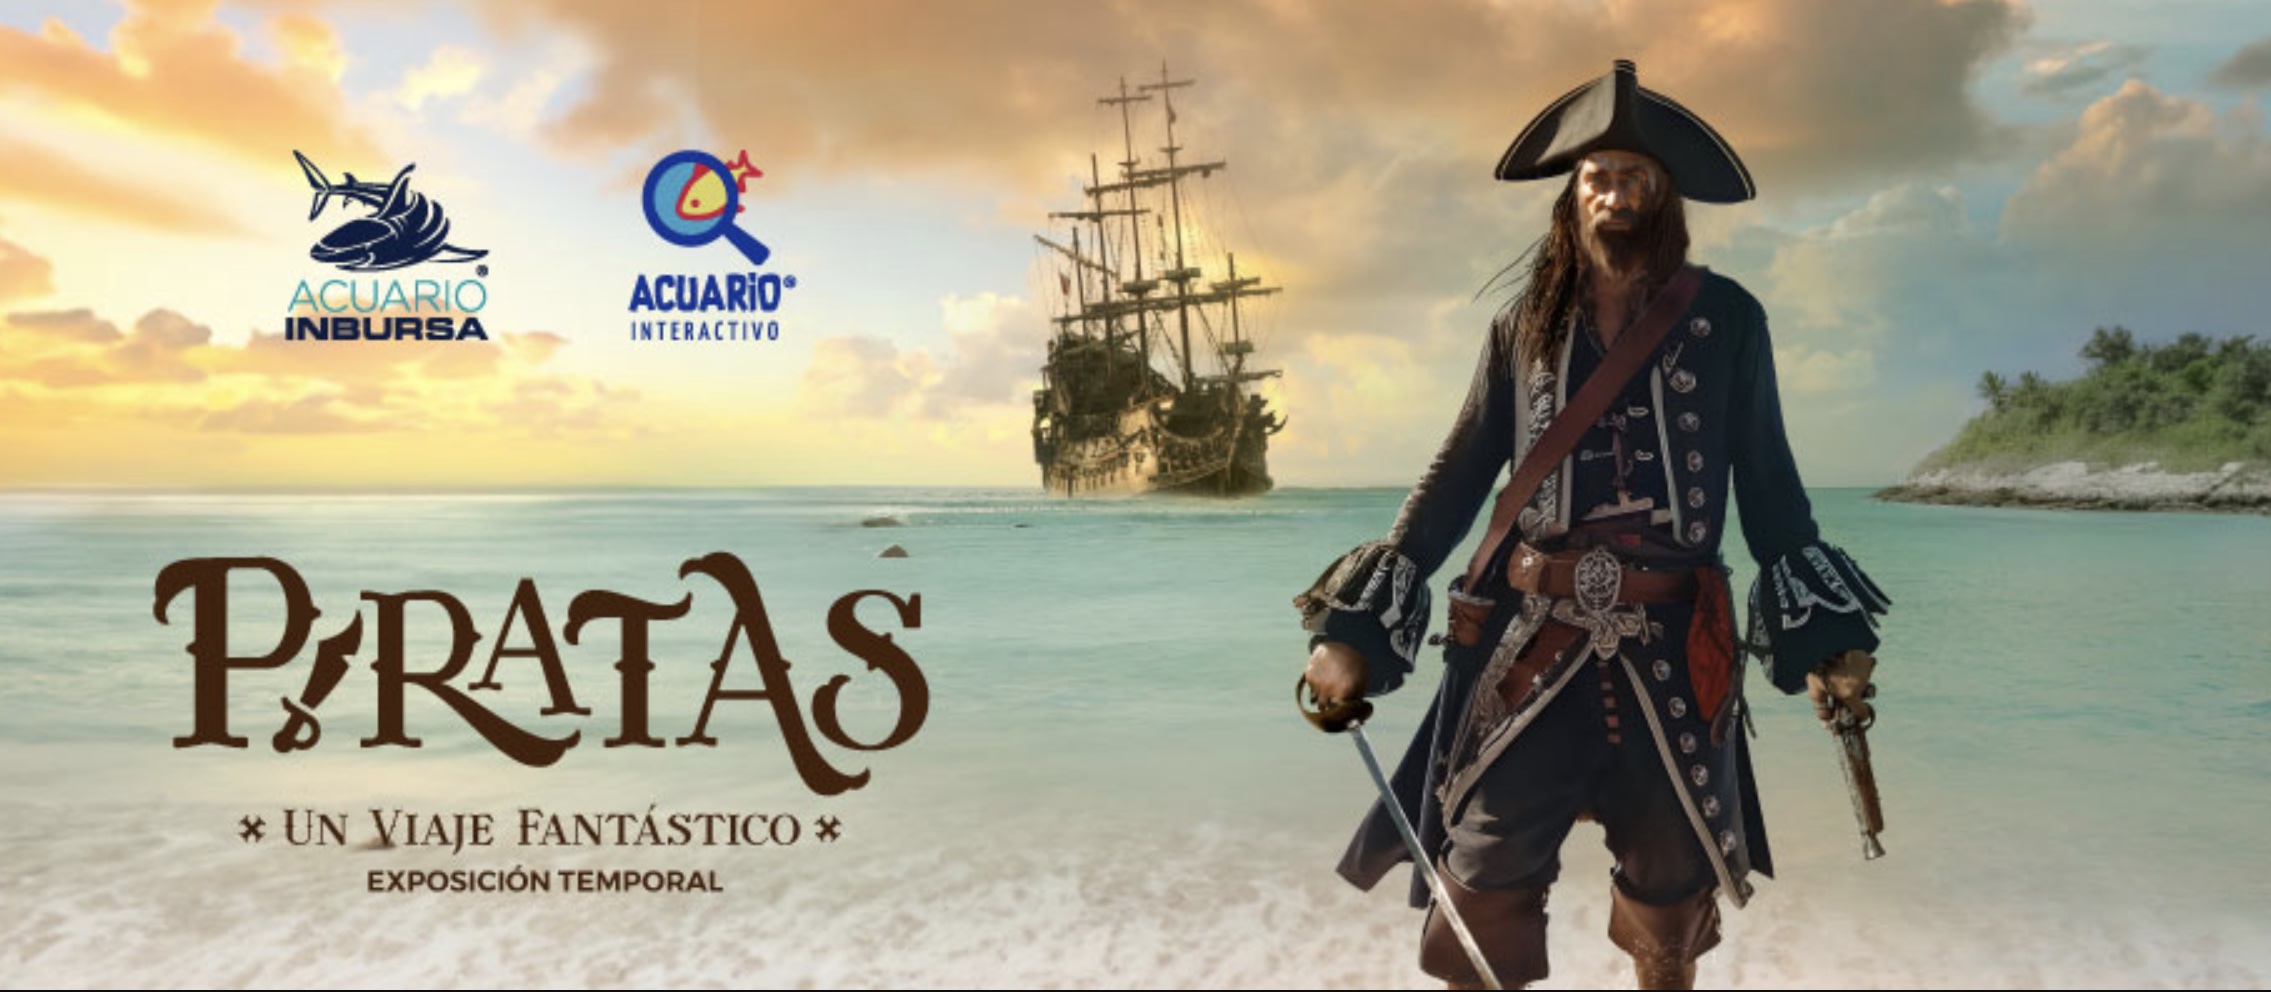 Piratas * Un viaje fantástico *